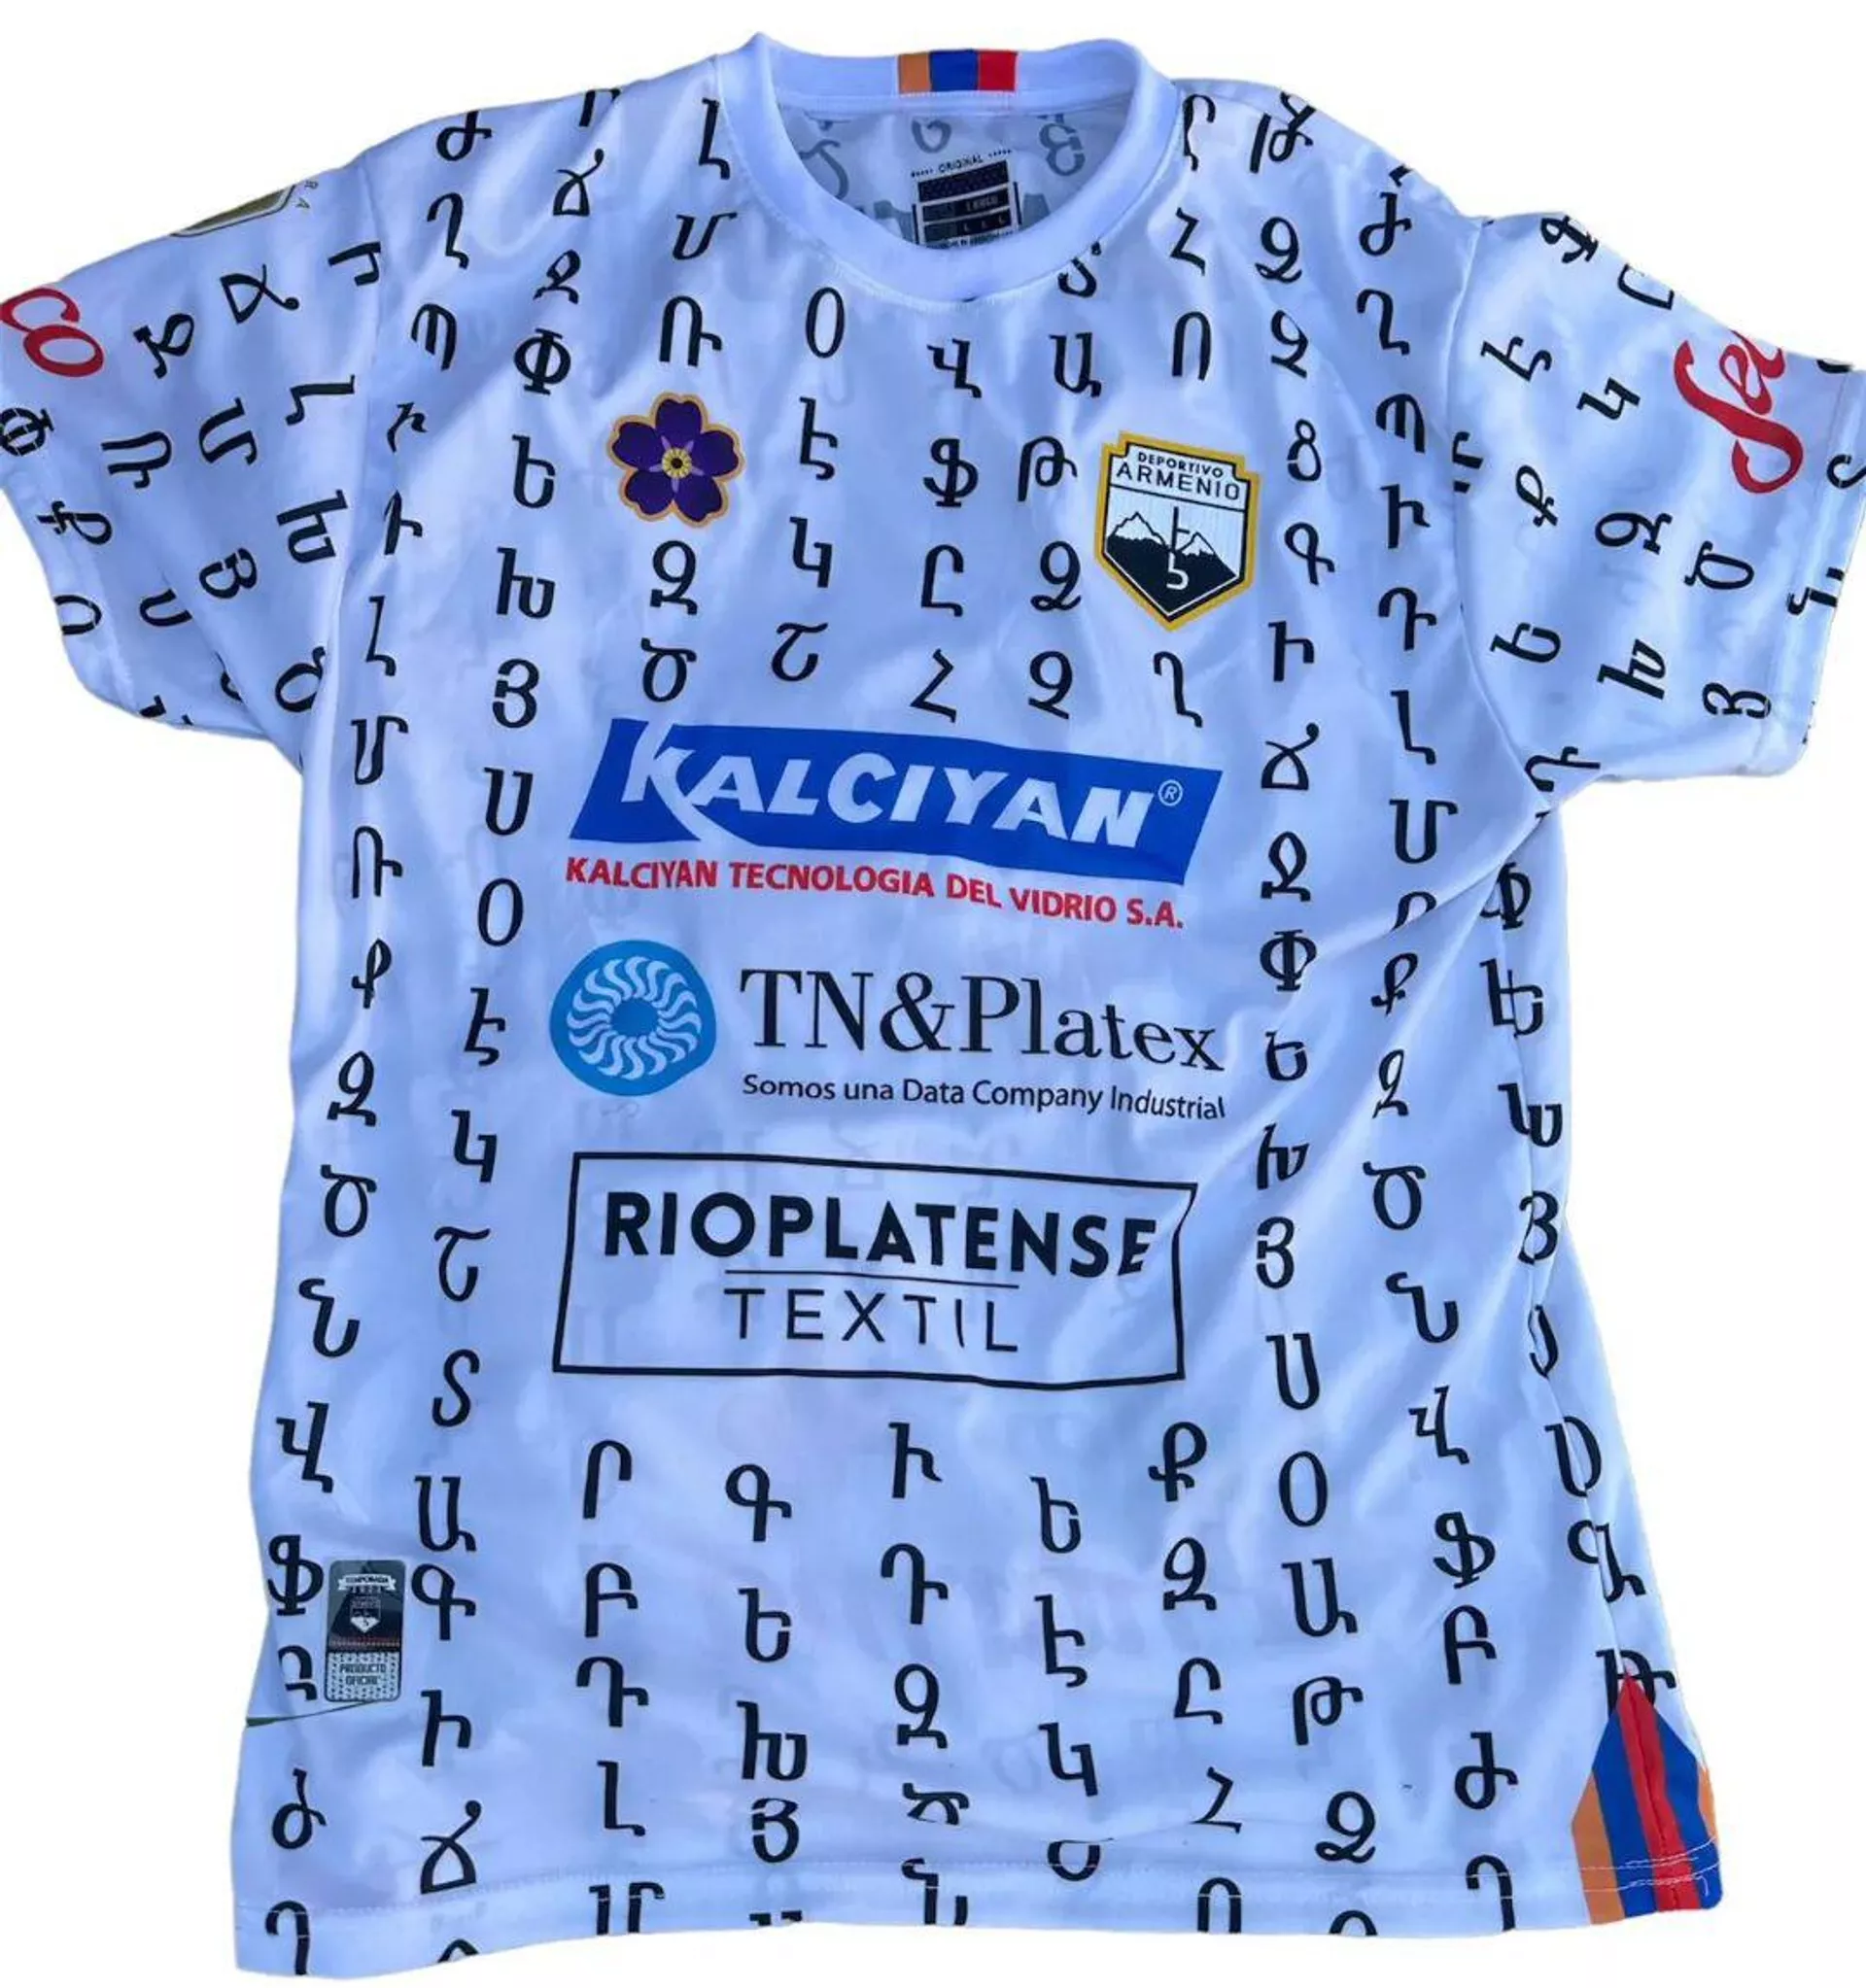 Արգենտինյան ֆուտբոլային ակումբը հայկական այբուբենով շապիկներ է ներկայացրել